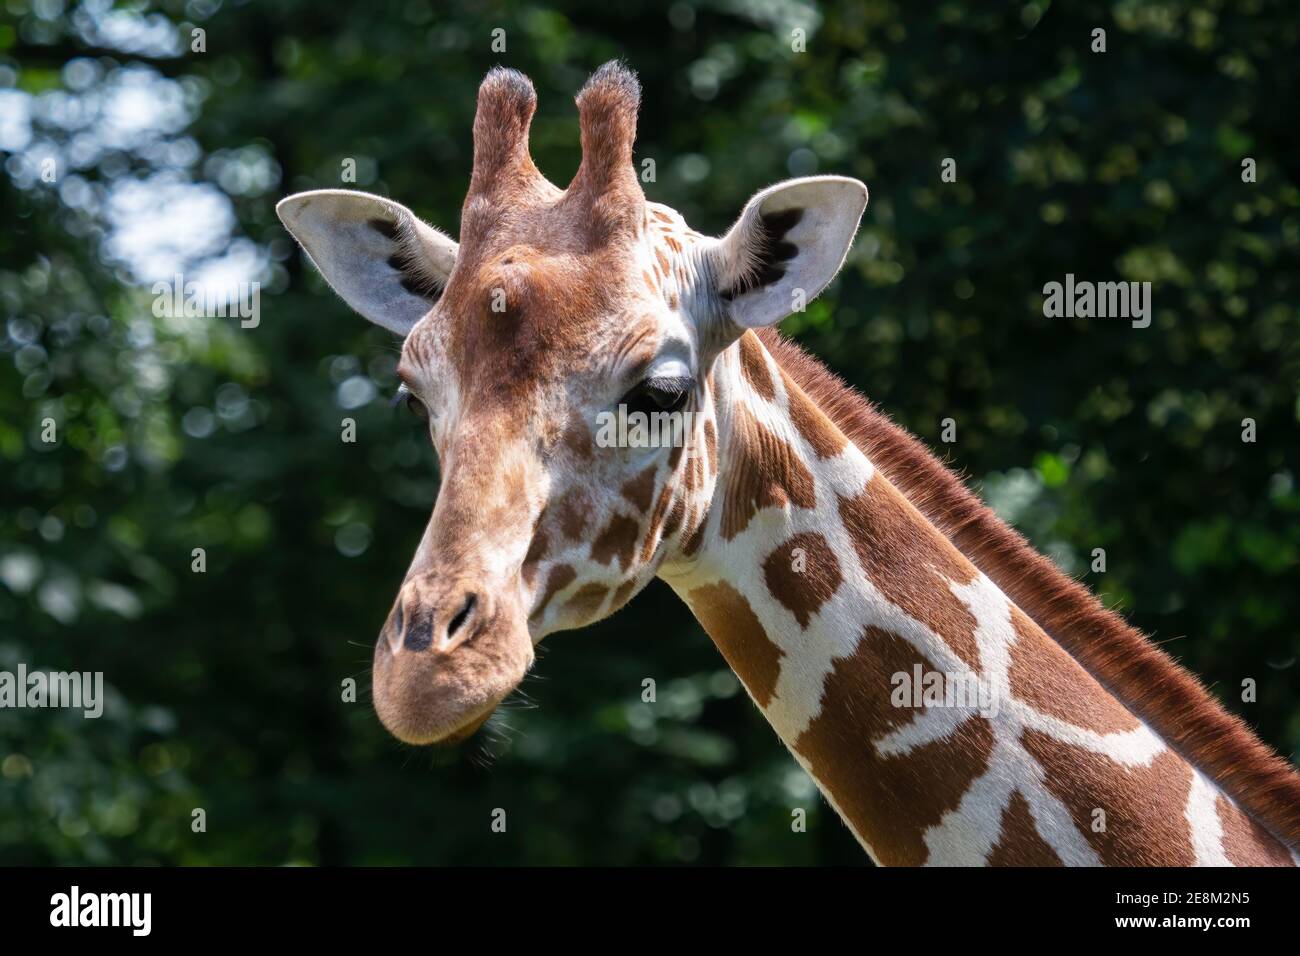 Portrait of Reticulated Giraffe, Giraffa camelopardalis reticulata, also known as the Somali giraffe. Stock Photo